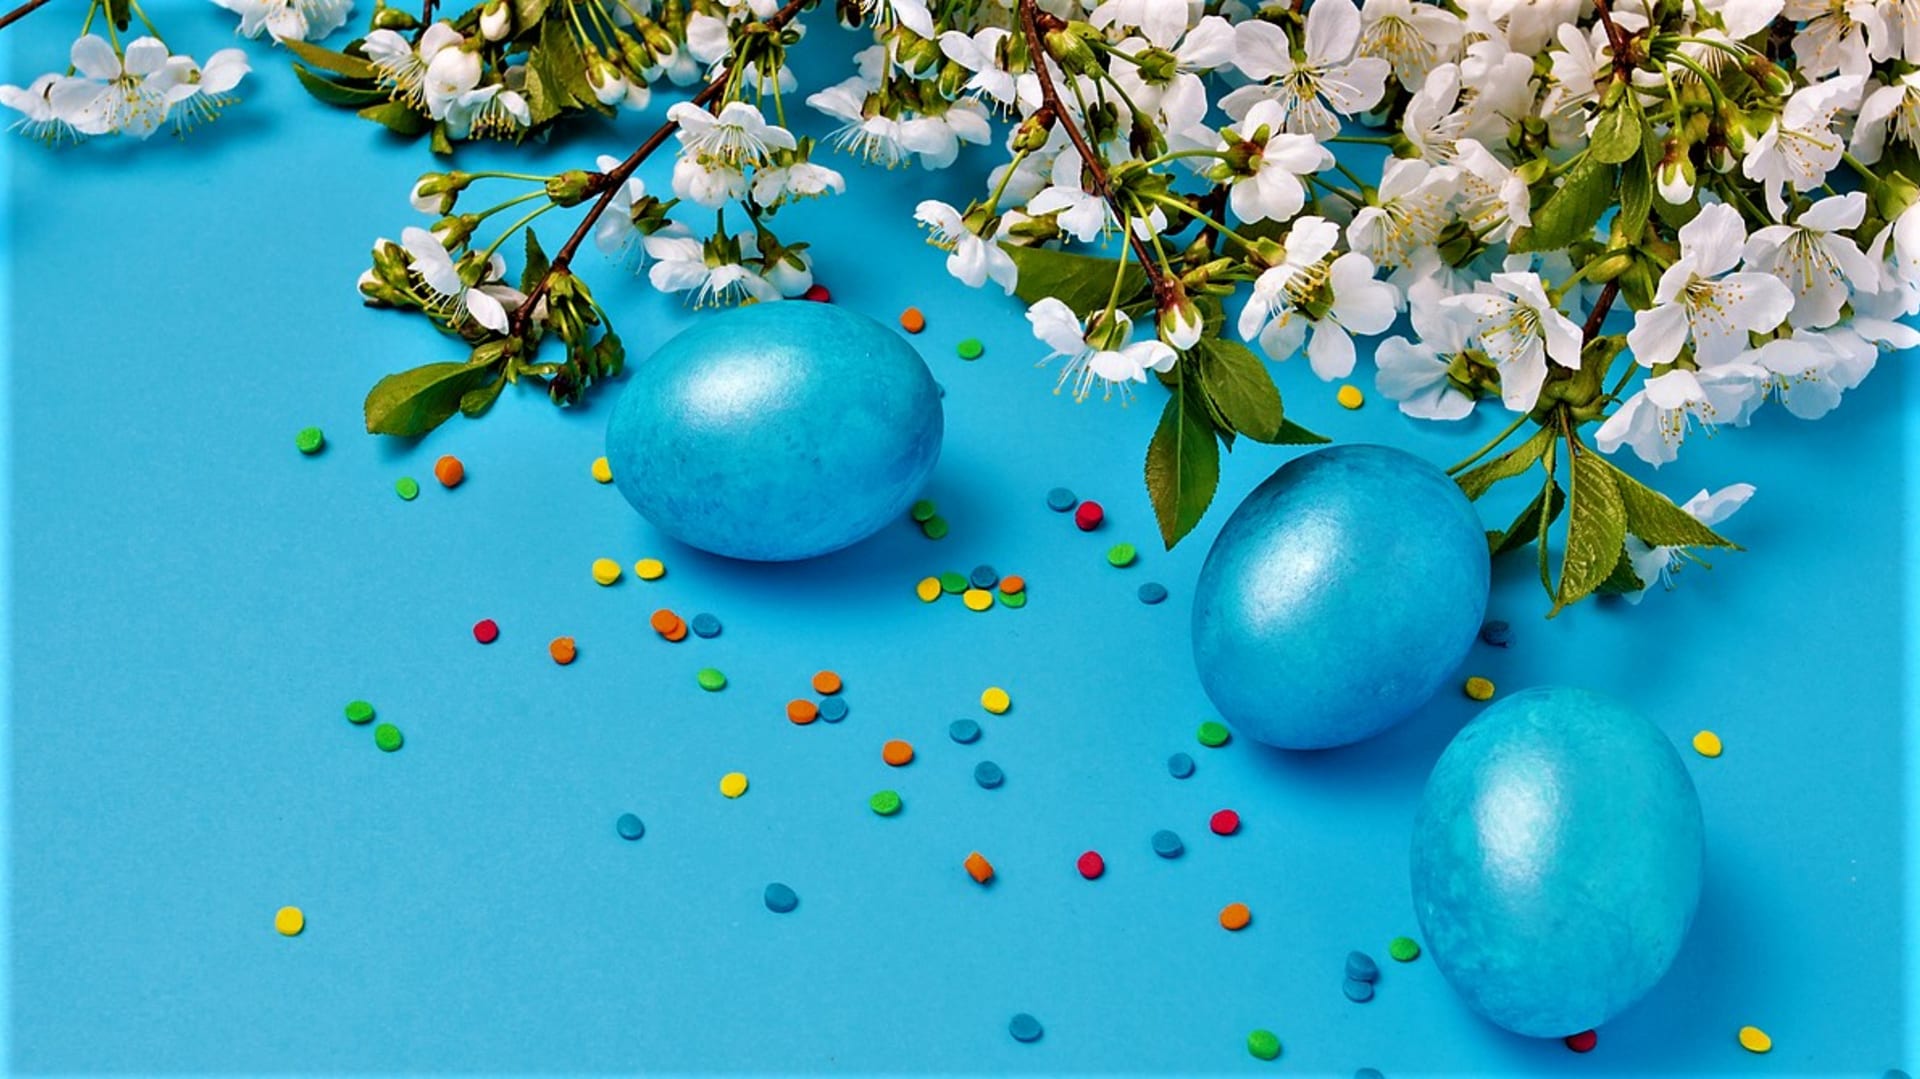 Pokud se nám modrá líbí, můžeme si připravit velikonoční výzdobu v odstínech téhle krásné, leč pro Velikonoce nepříliš tradiční barvy.